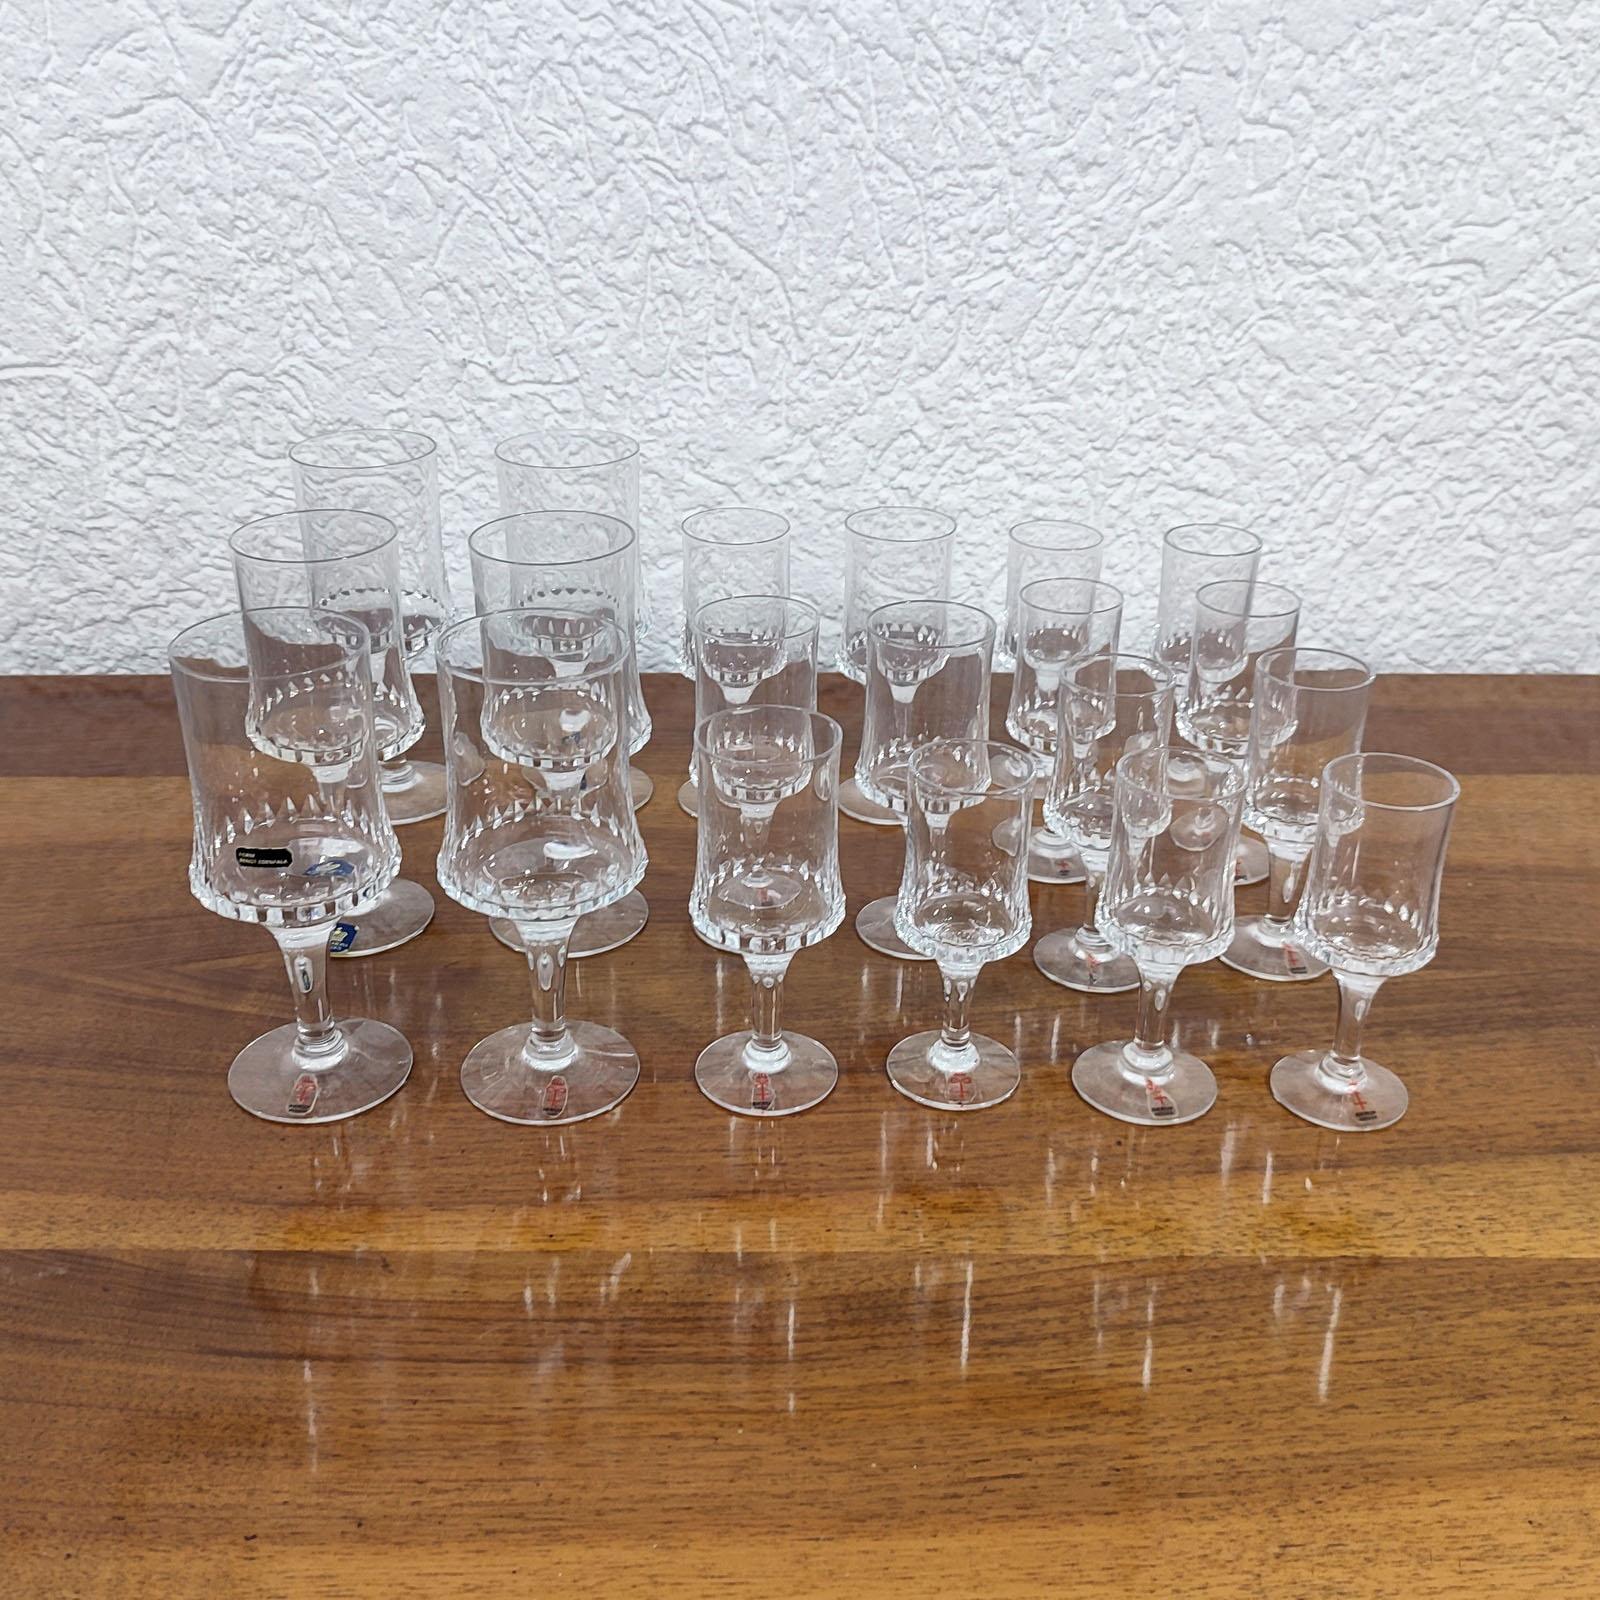 Bengt Edenfalk pour Skruf et Royal Krona, 20 verres à vin, à Porto et à liqueur.
Verres à pied, décorés sur le pourtour d'un motif en cristal taillé en diamant, ces verres sont d'une grande rareté.
La plupart d'entre eux conservent les labels